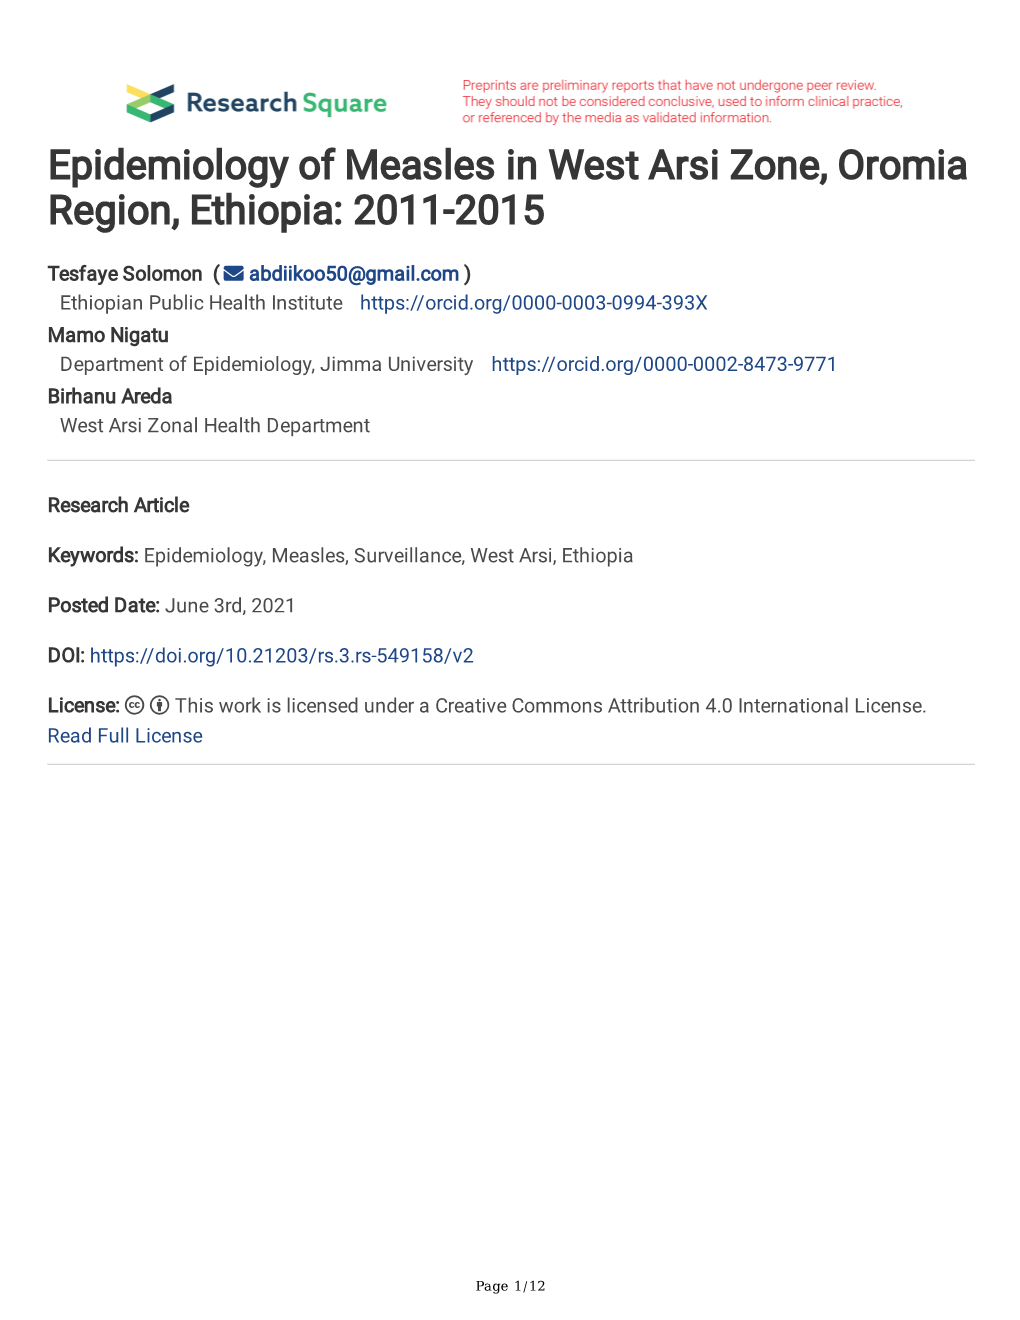 Epidemiology of Measles in West Arsi Zone, Oromia Region, Ethiopia: 2011-2015